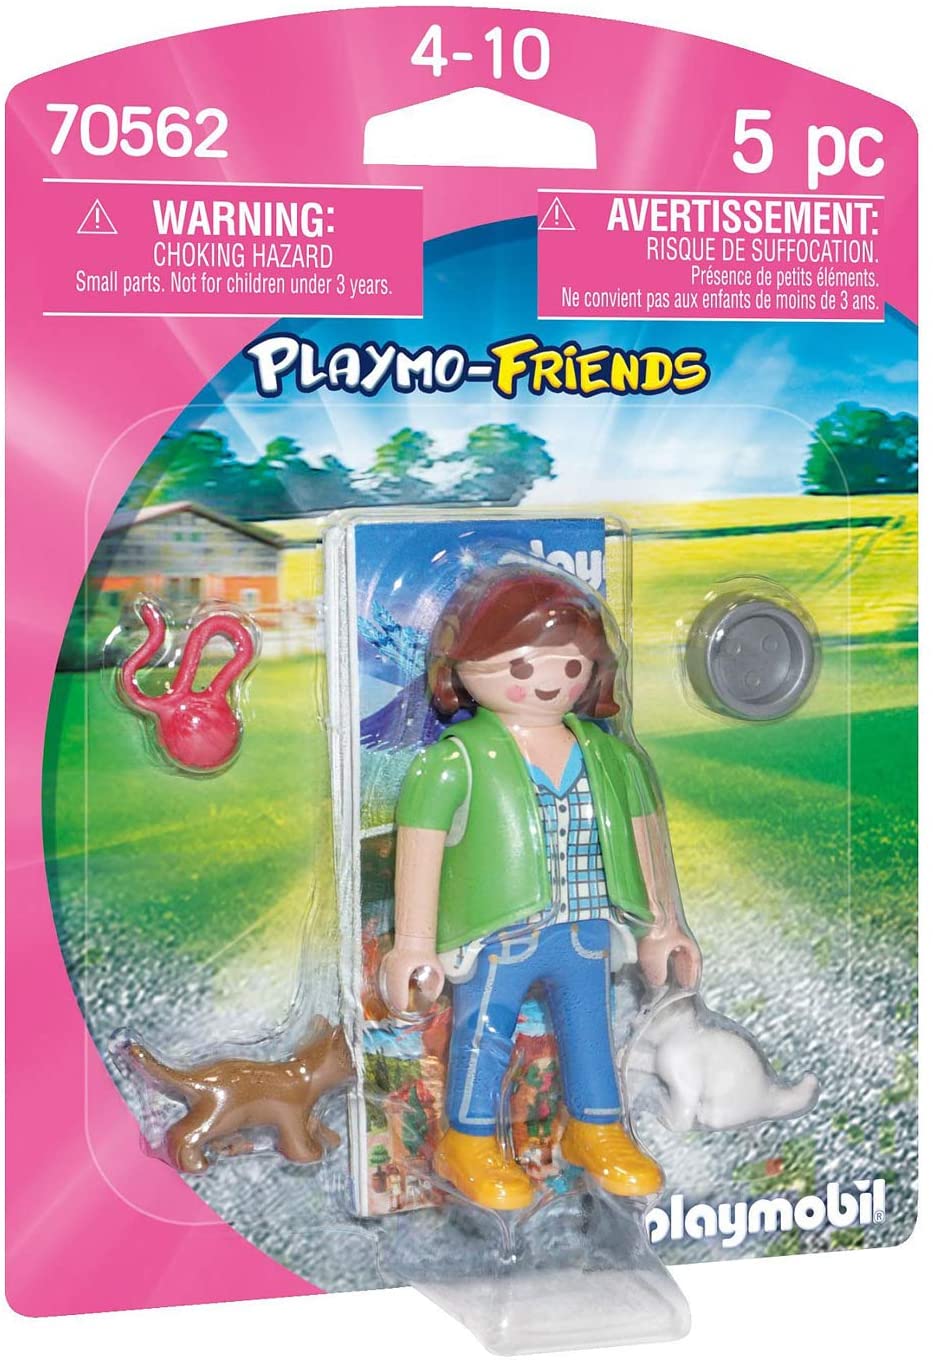 Playmobil 70562 Playmo-Friends Boy con coche RC, para niños a partir de 4 años